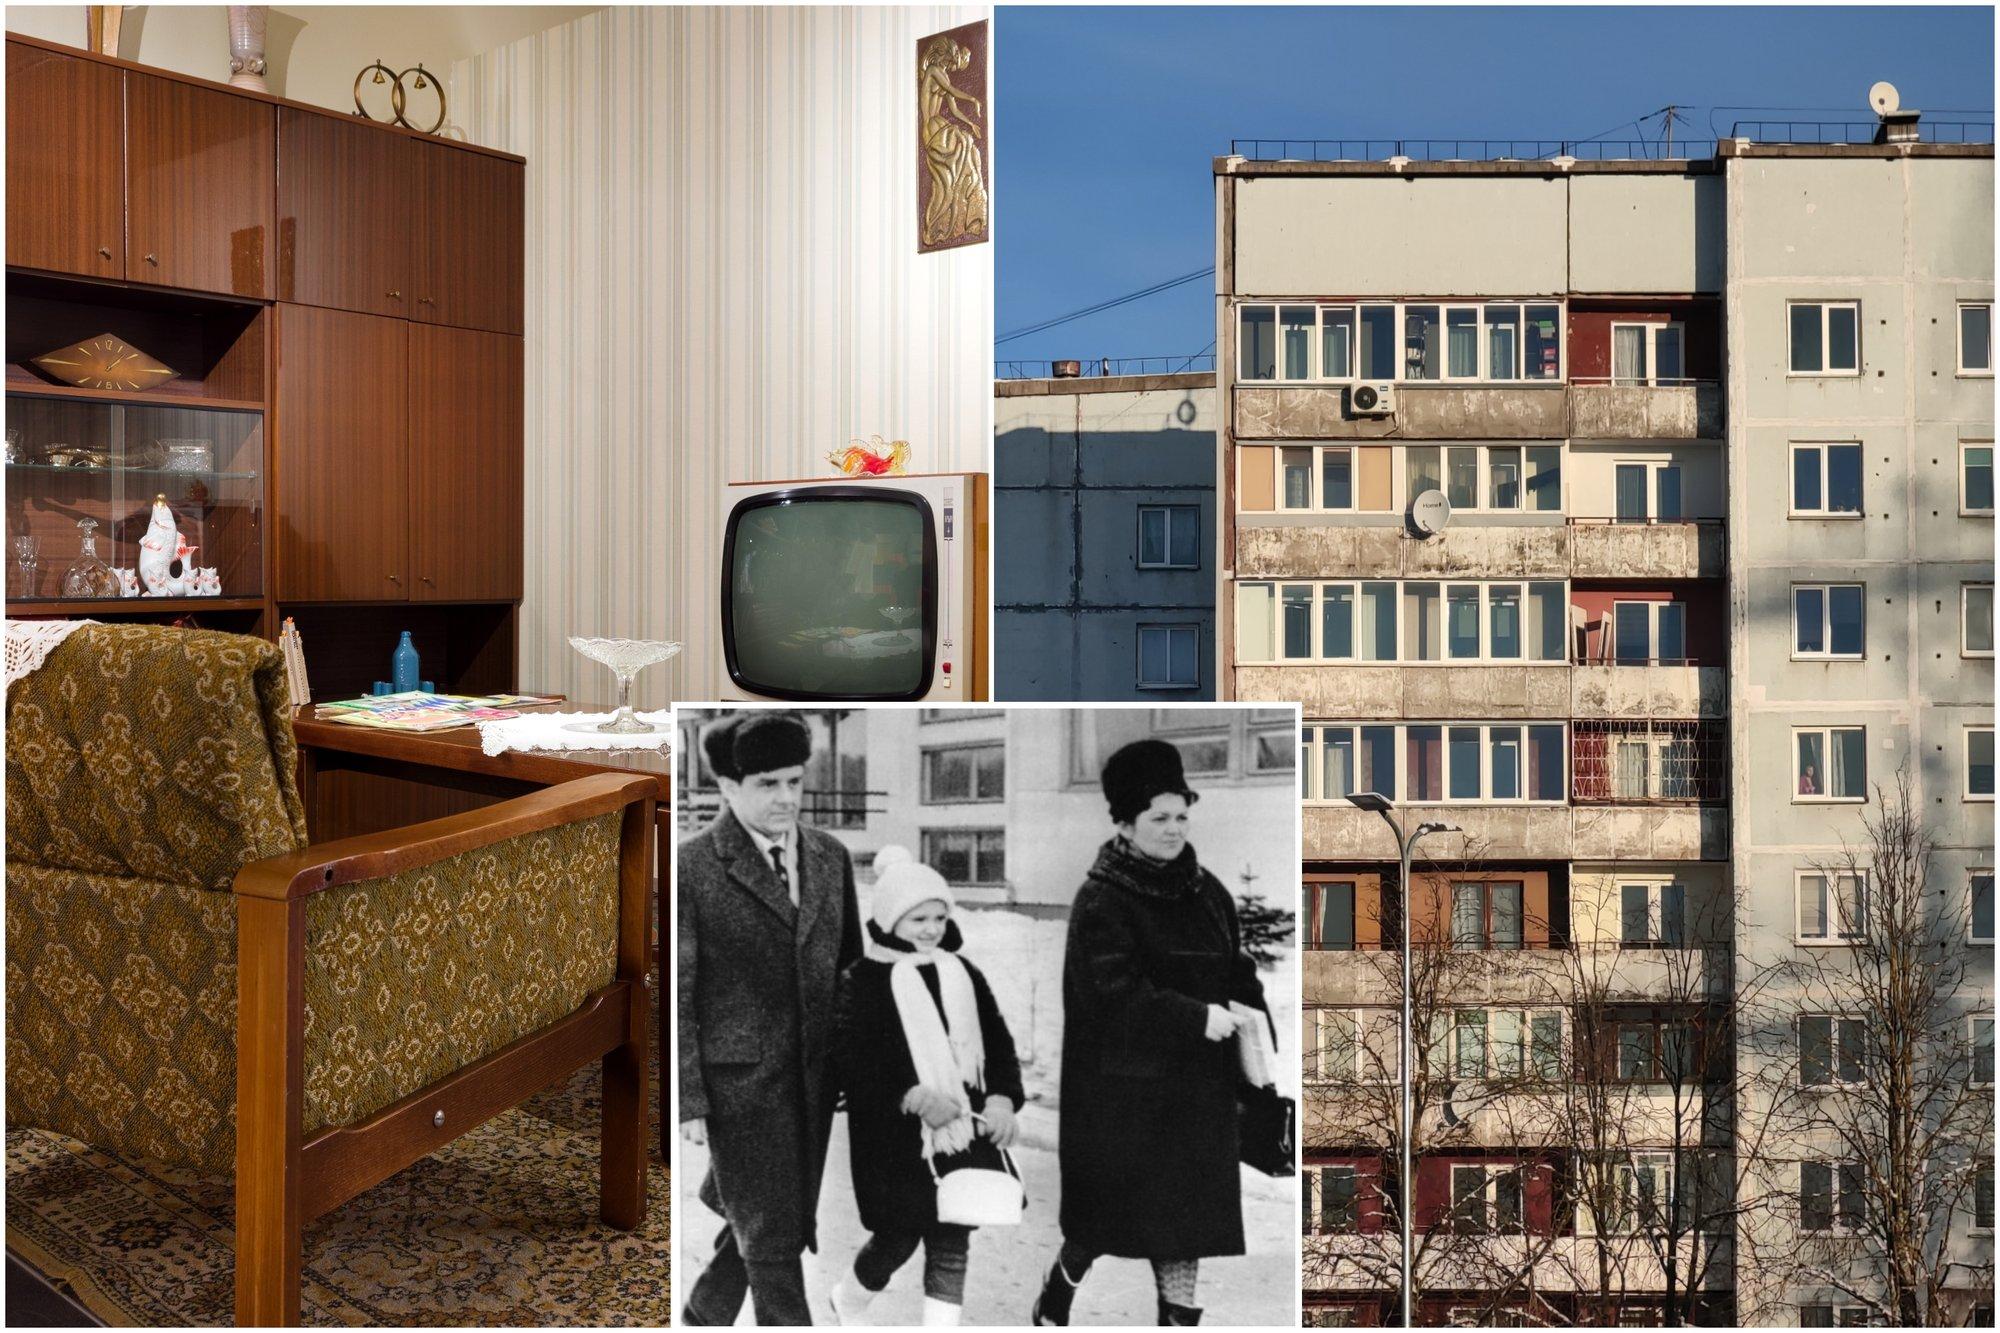 Didžiausia sovietmečio siekiamybė – butas chruščiovkėje: laukę ilgus metus, žmonės gaudavo ne tik būstą, bet ir absurdišką buitį